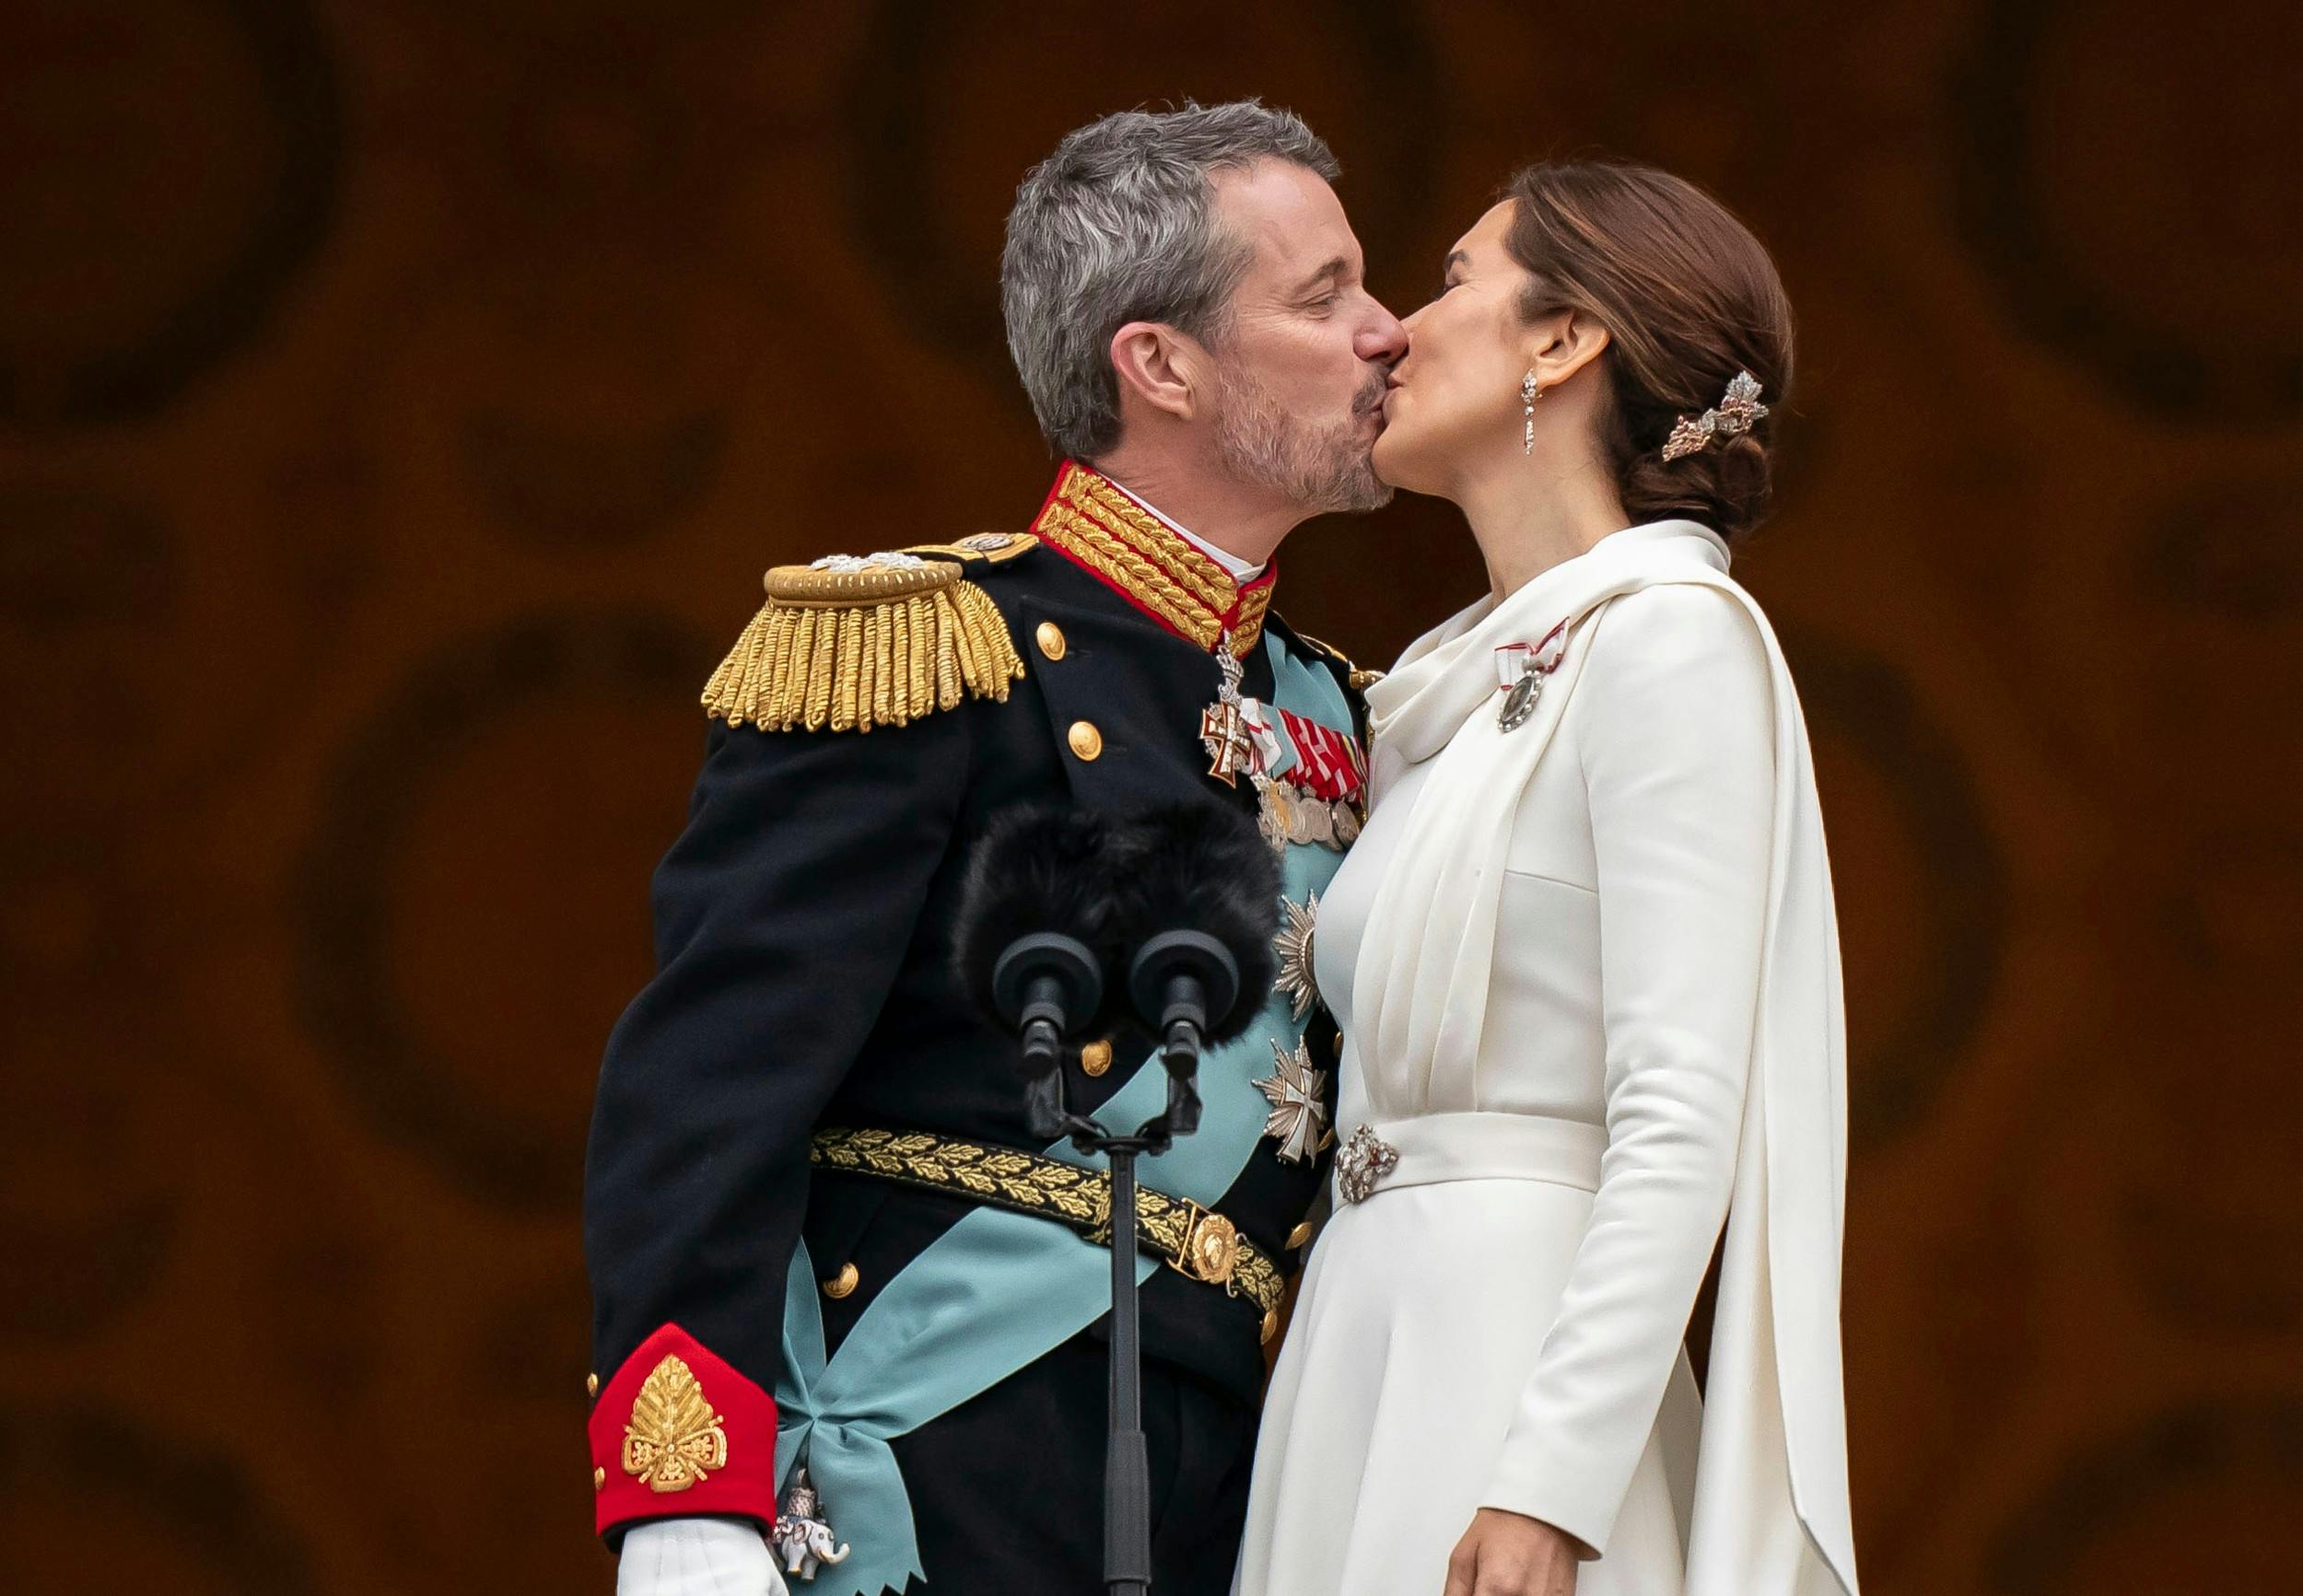 Var danskerne i tvivl om det gode forhold mellem kongeparret, skal de ikke se på det officielle portræt – til gengæld viste de kærligheden frem på balkonen, da Frederik blev udråbt til konge i januar.